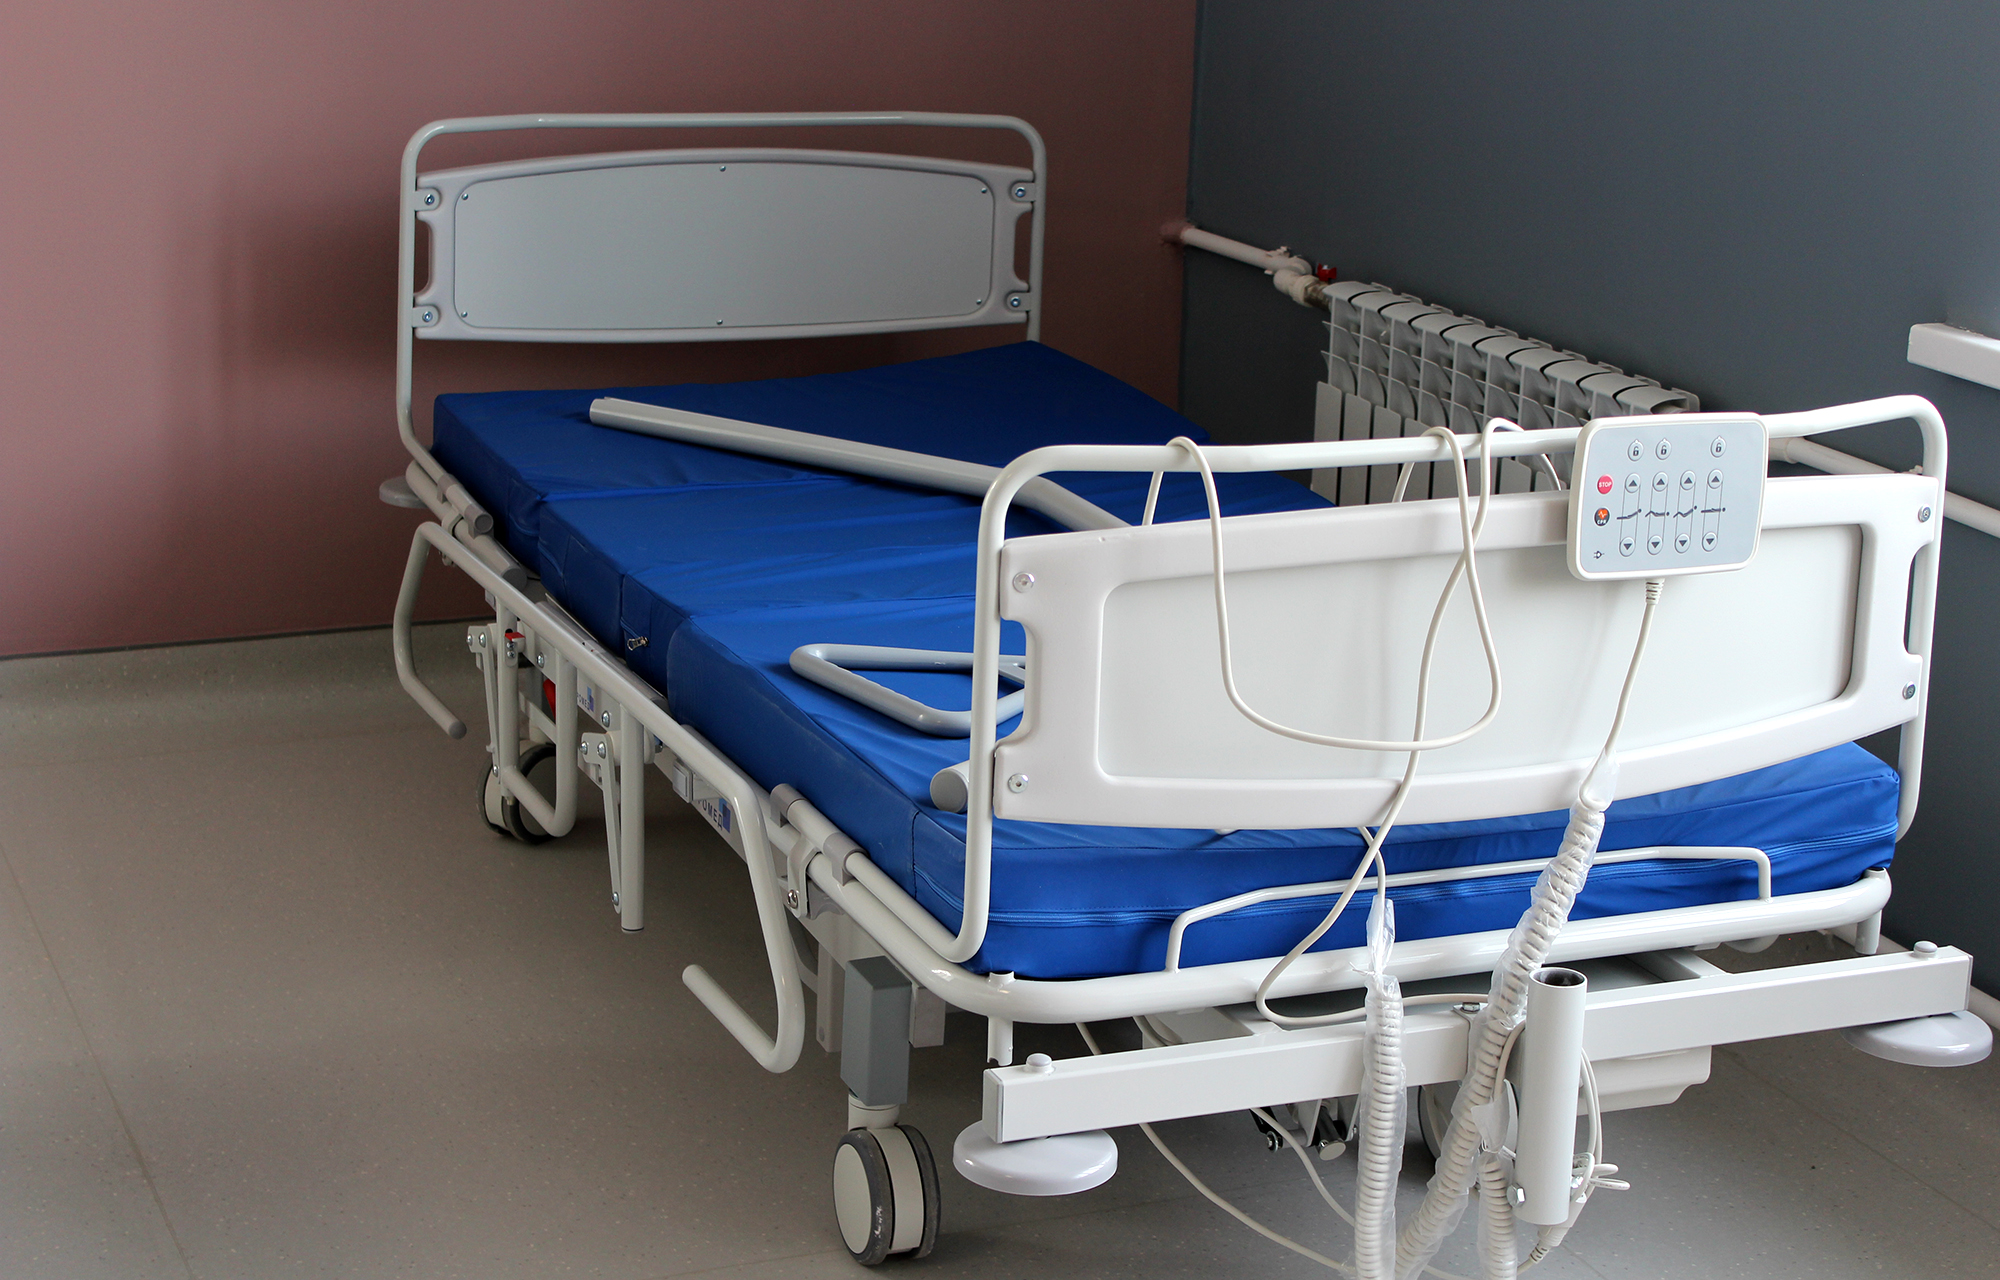 В Областной клинической больнице в Твери появится новое реабилитационное оборудование